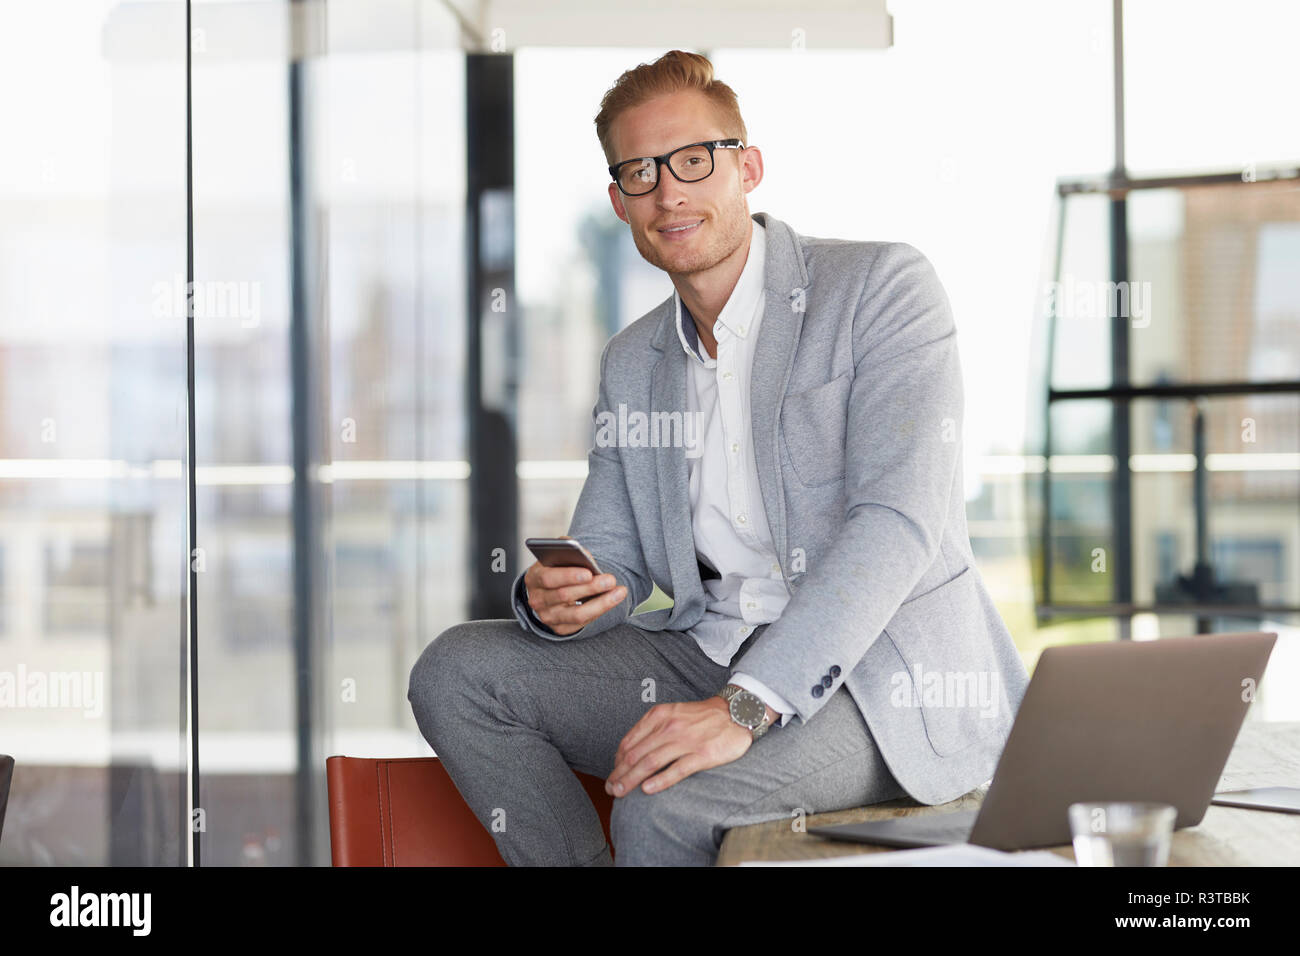 Retrato del empresario sonriente con portátil y teléfono celular sentada en su escritorio en la oficina Foto de stock